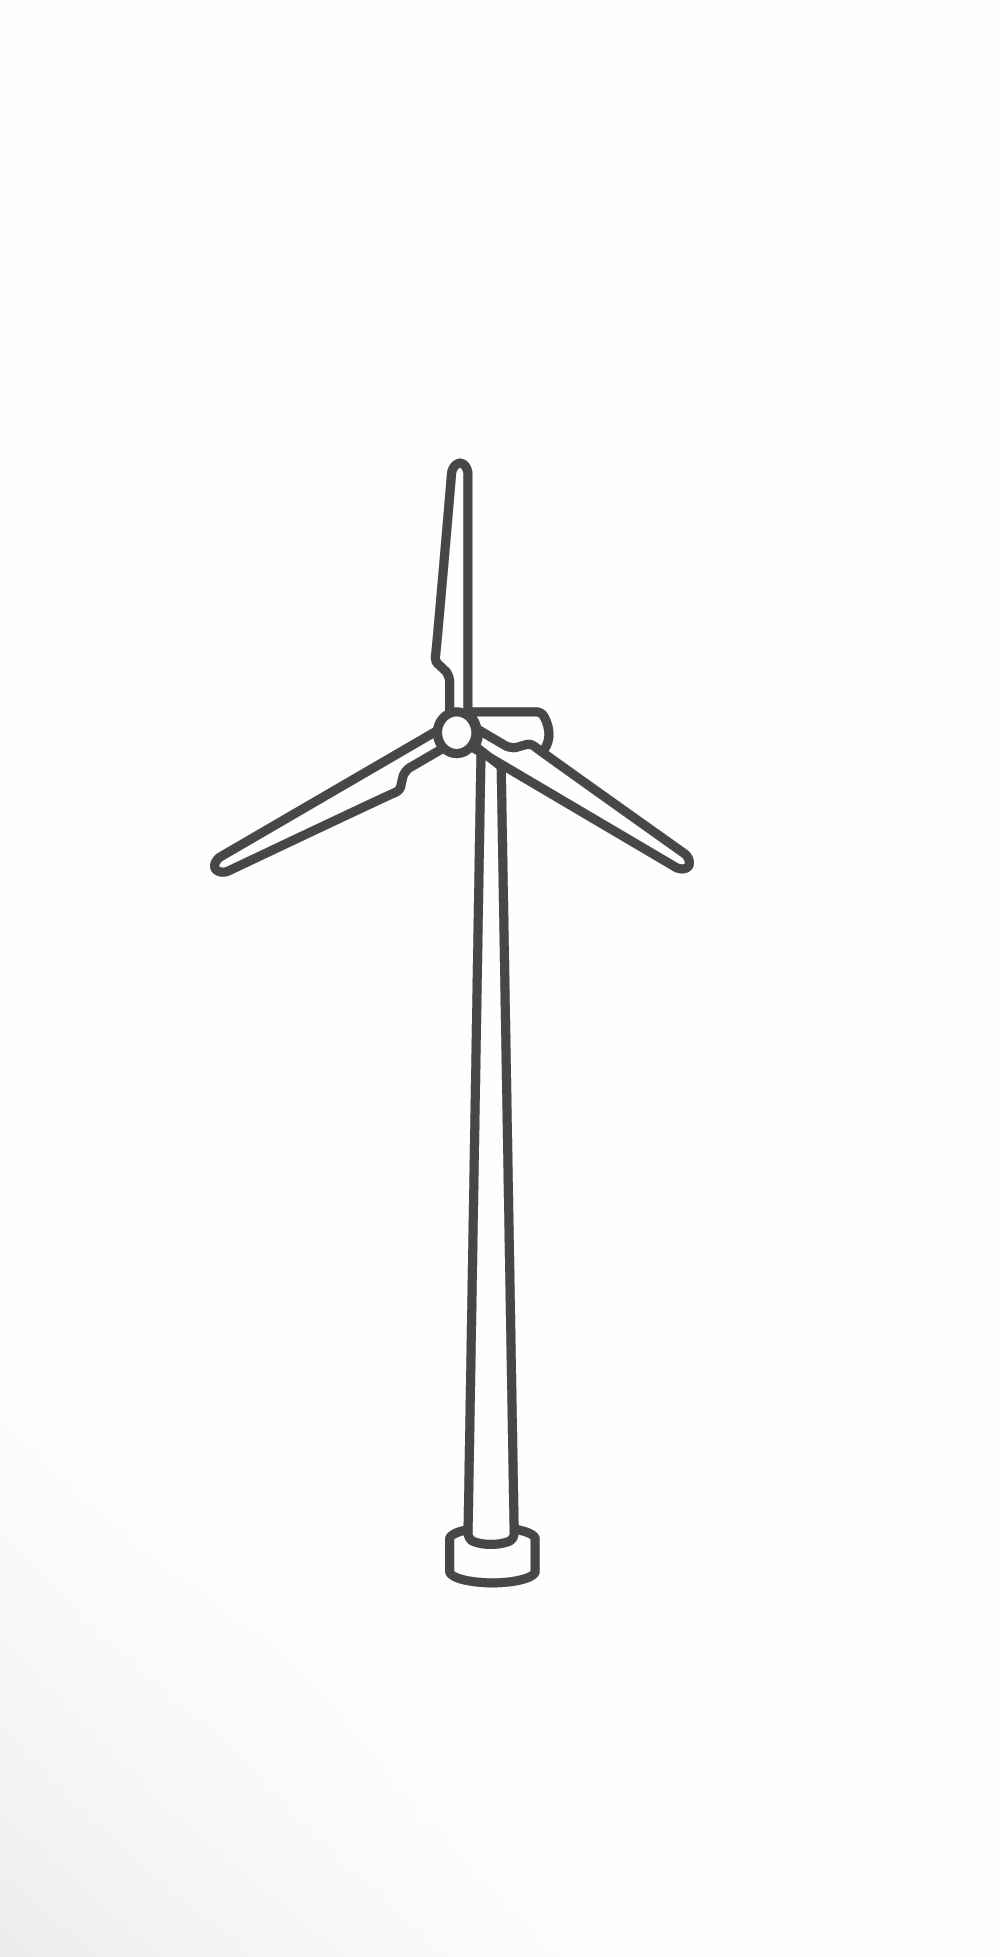 イラスト 風車